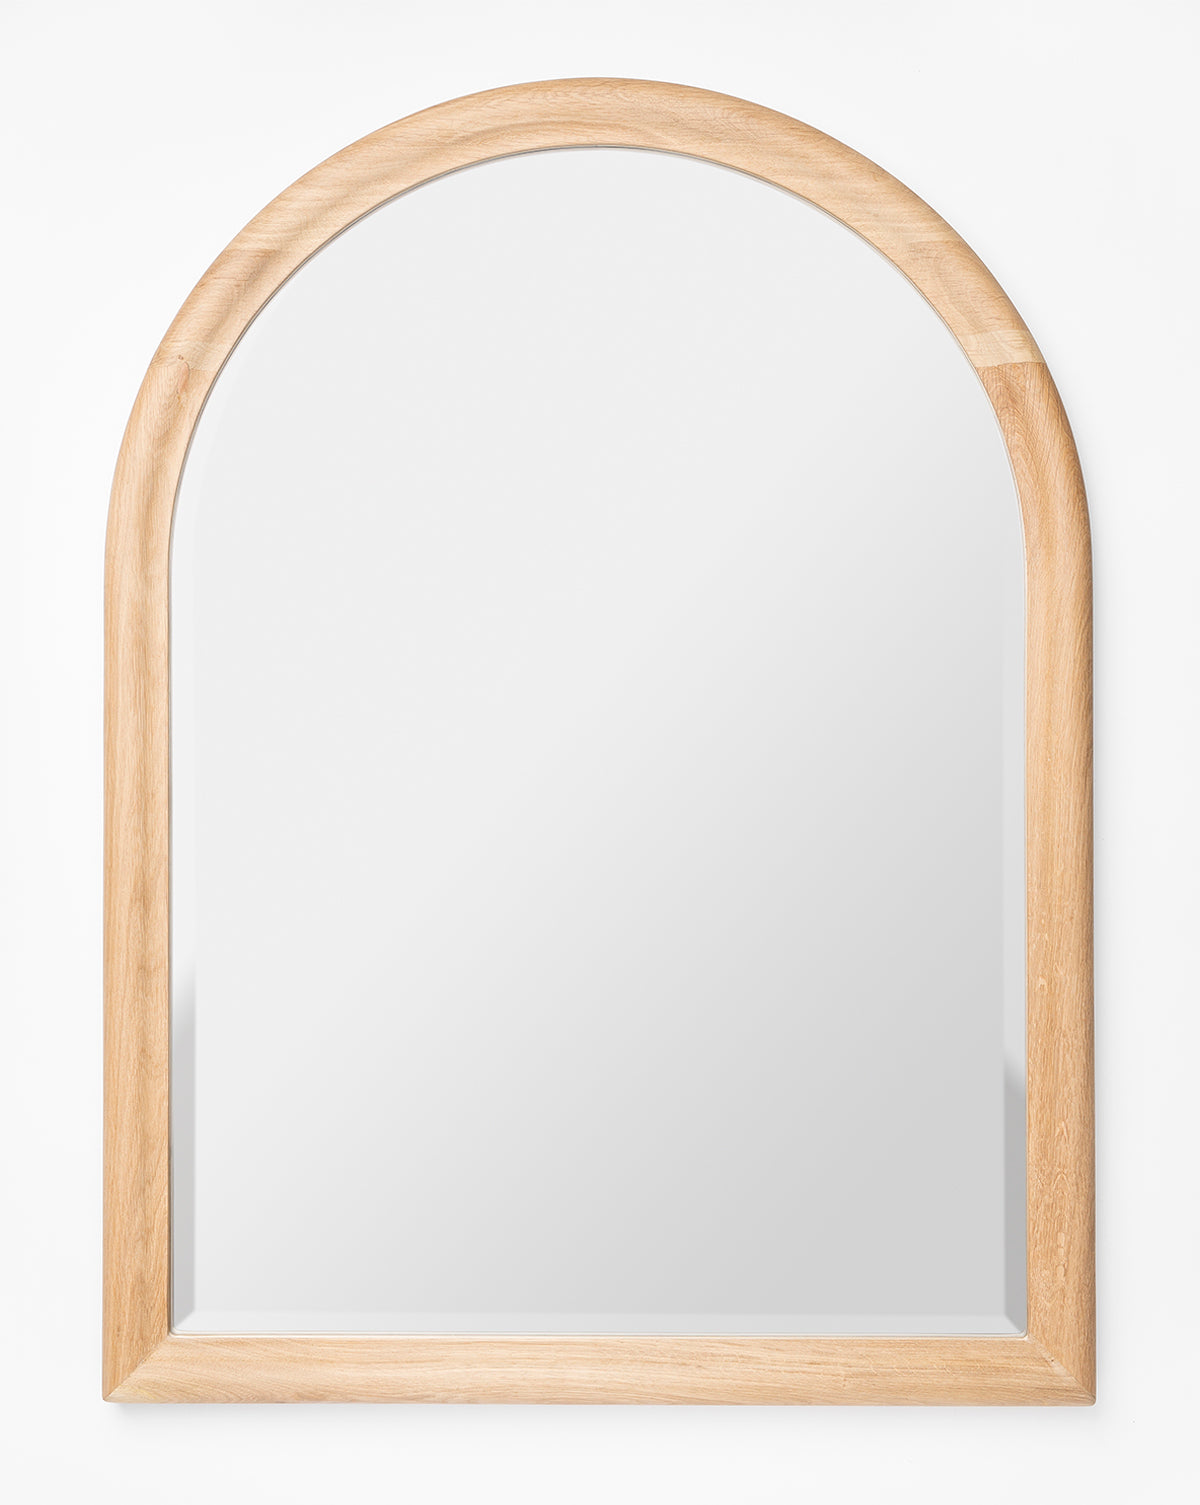 Credence, Reta Arched Wall Mirror